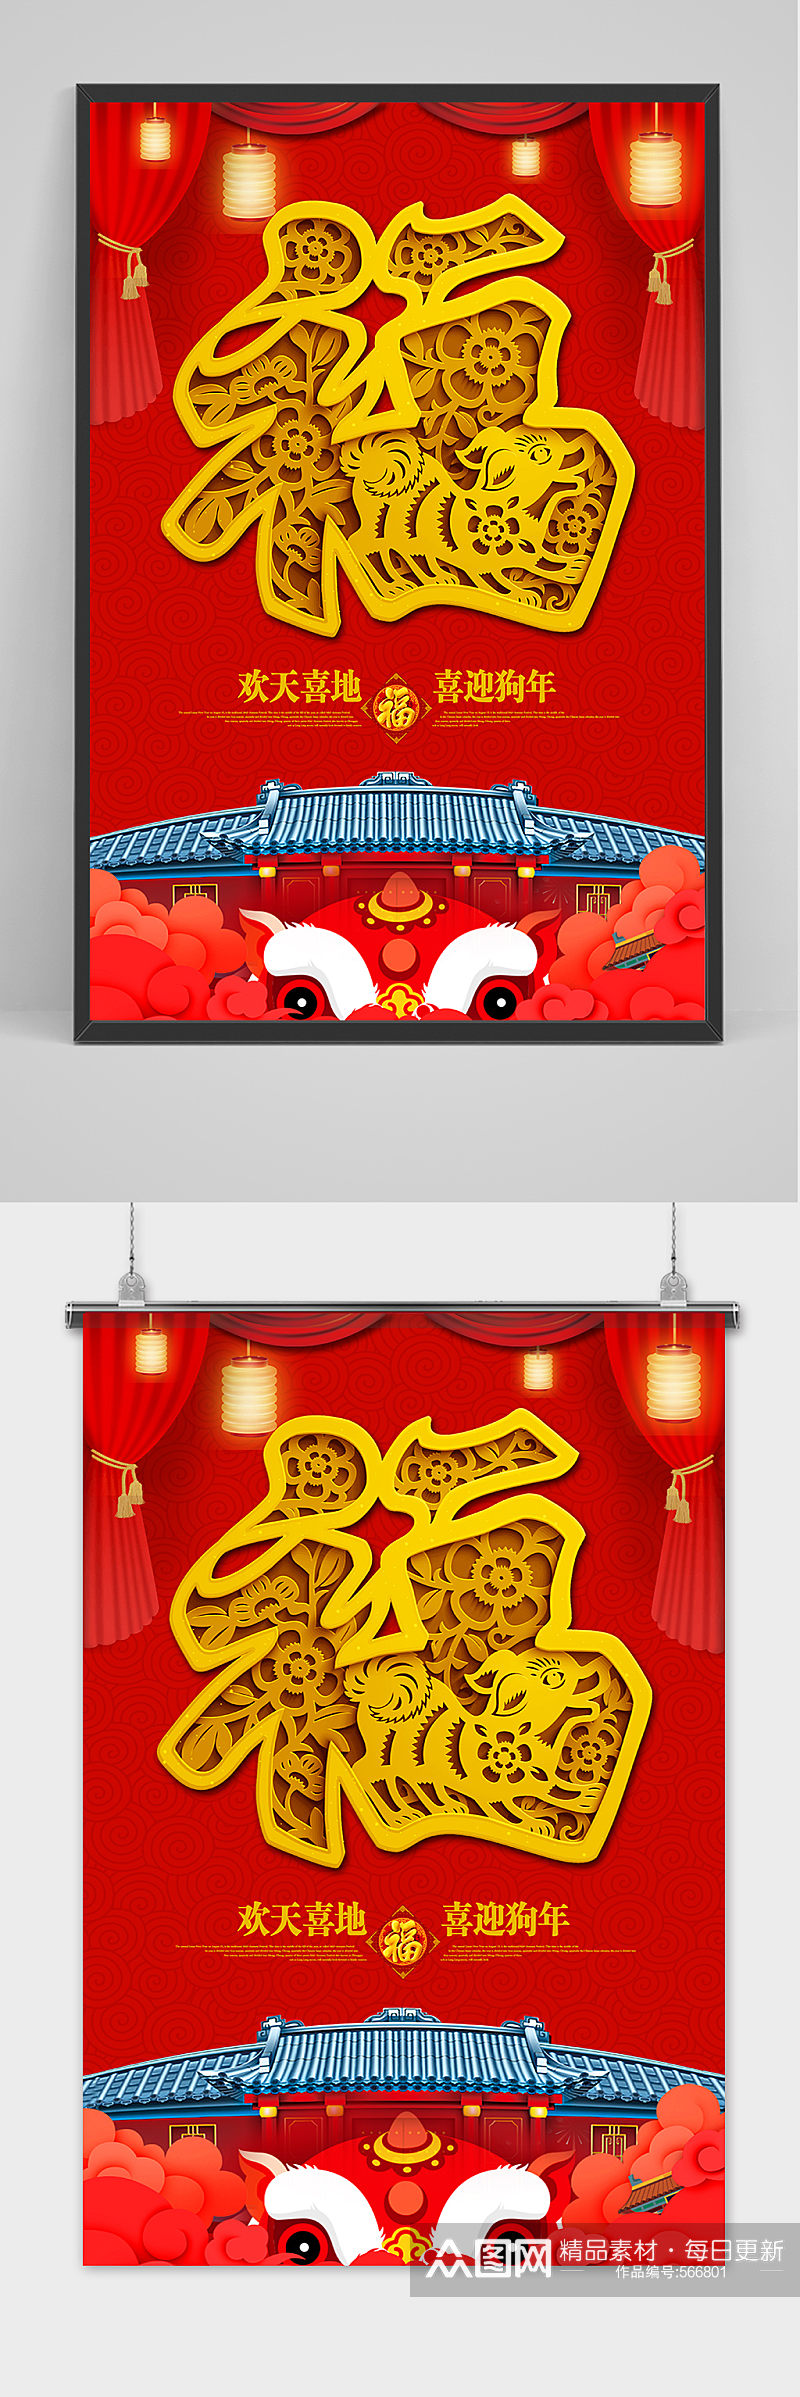 中国风背景福字新年海报模板设计素材